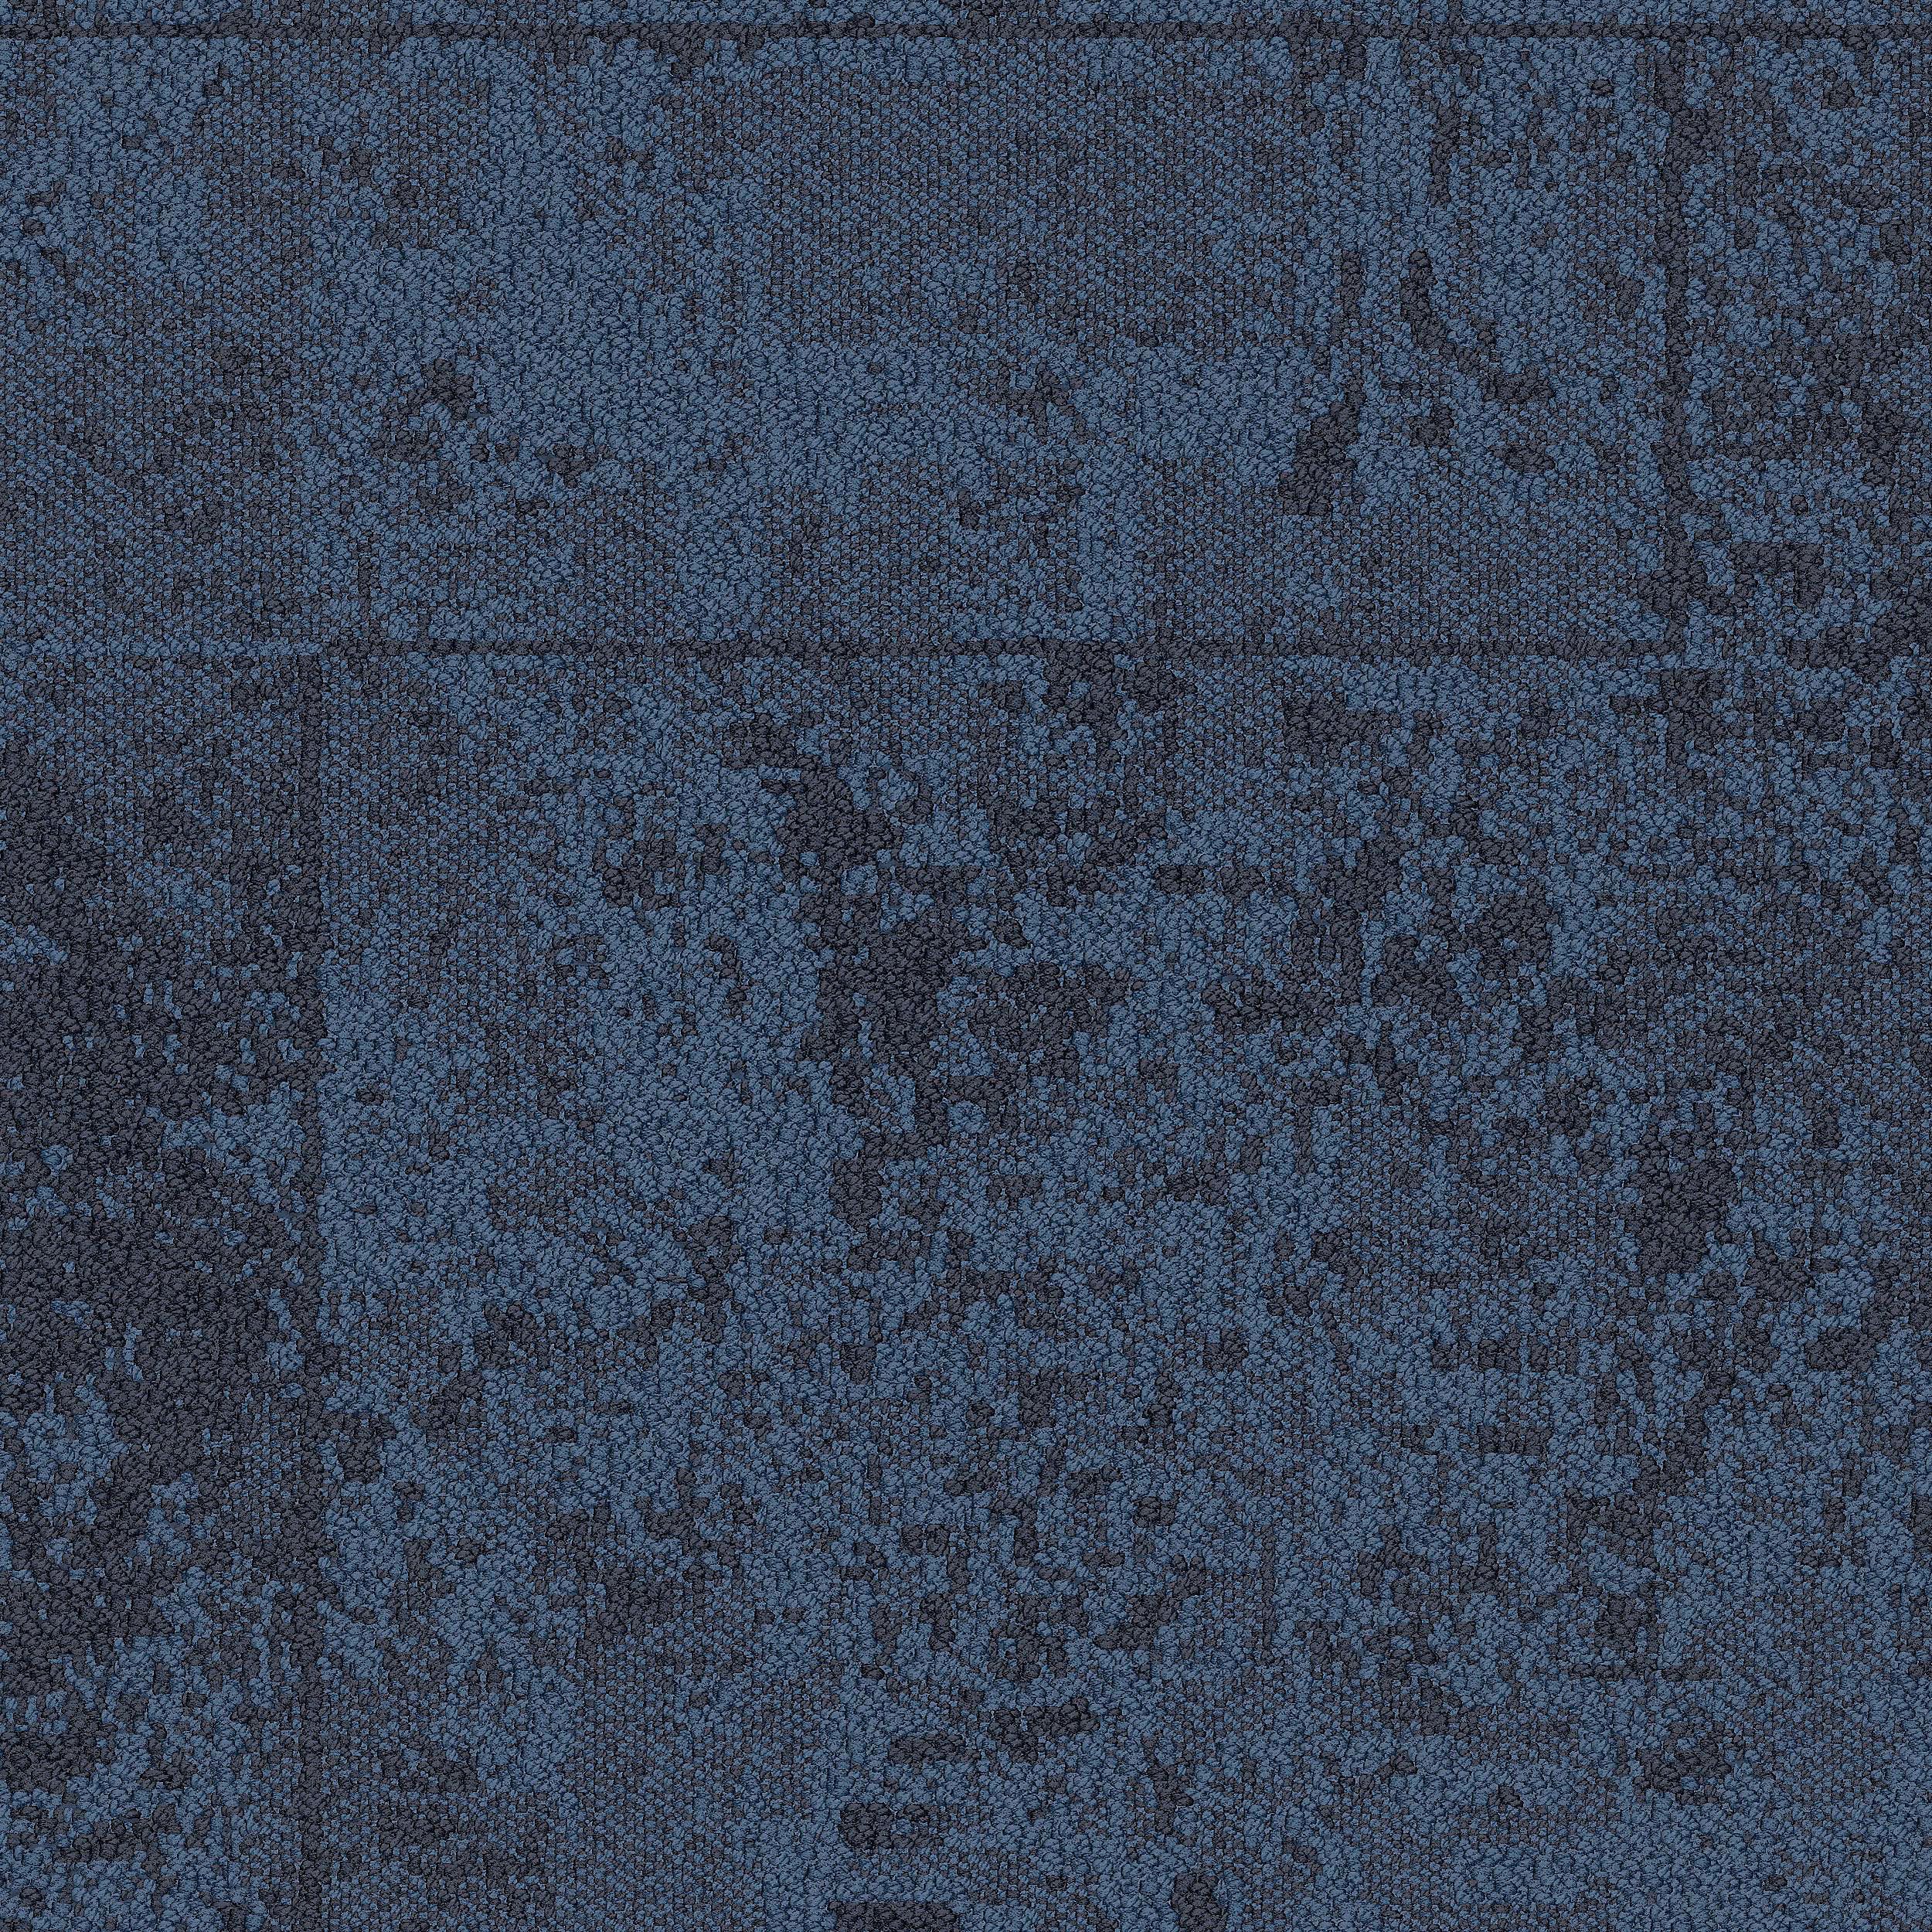 B603 Carpet Tile In Pacific número de imagen 2